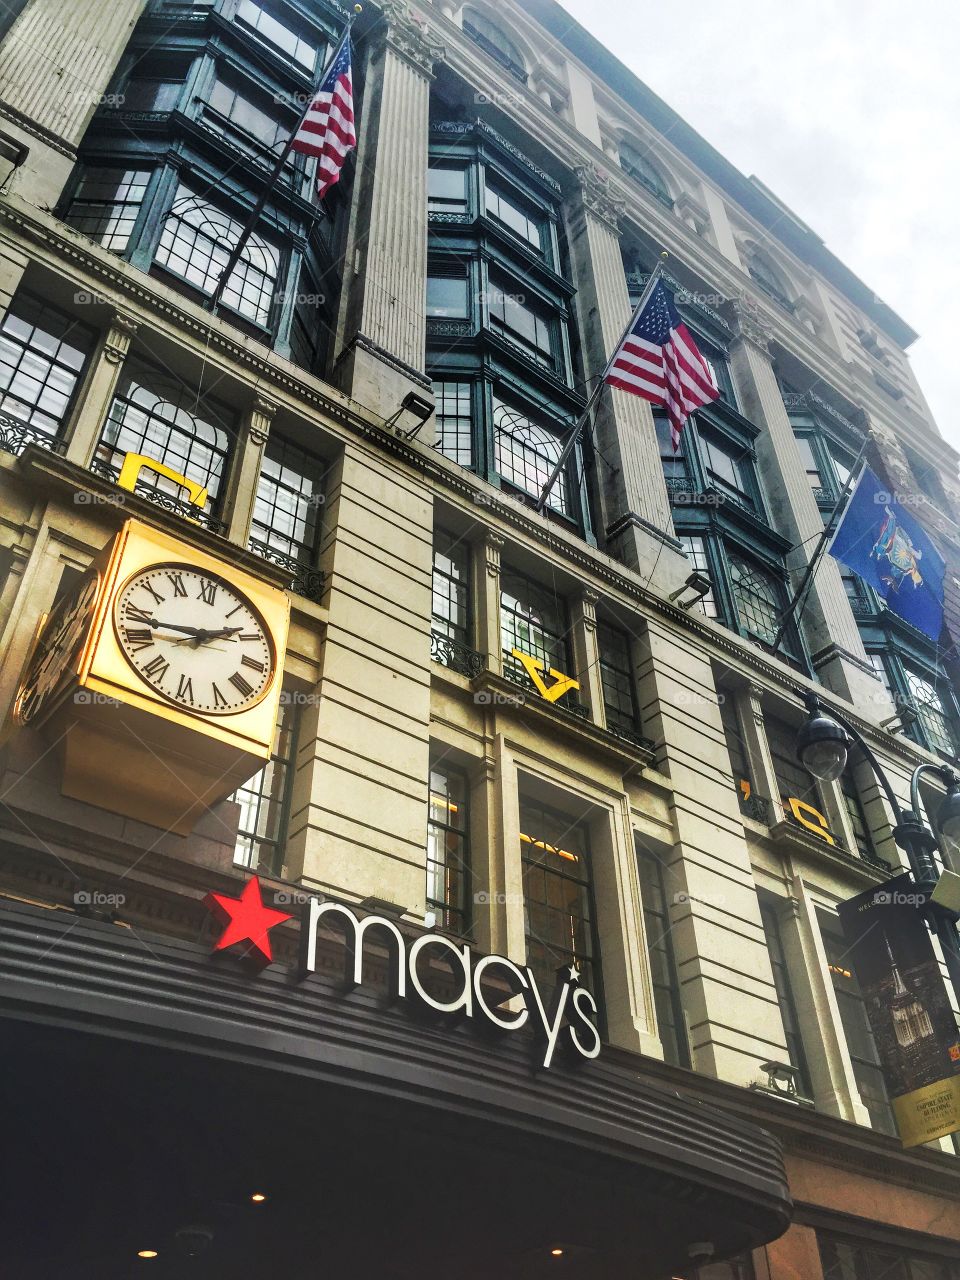 Macy's . A Macy's in New York